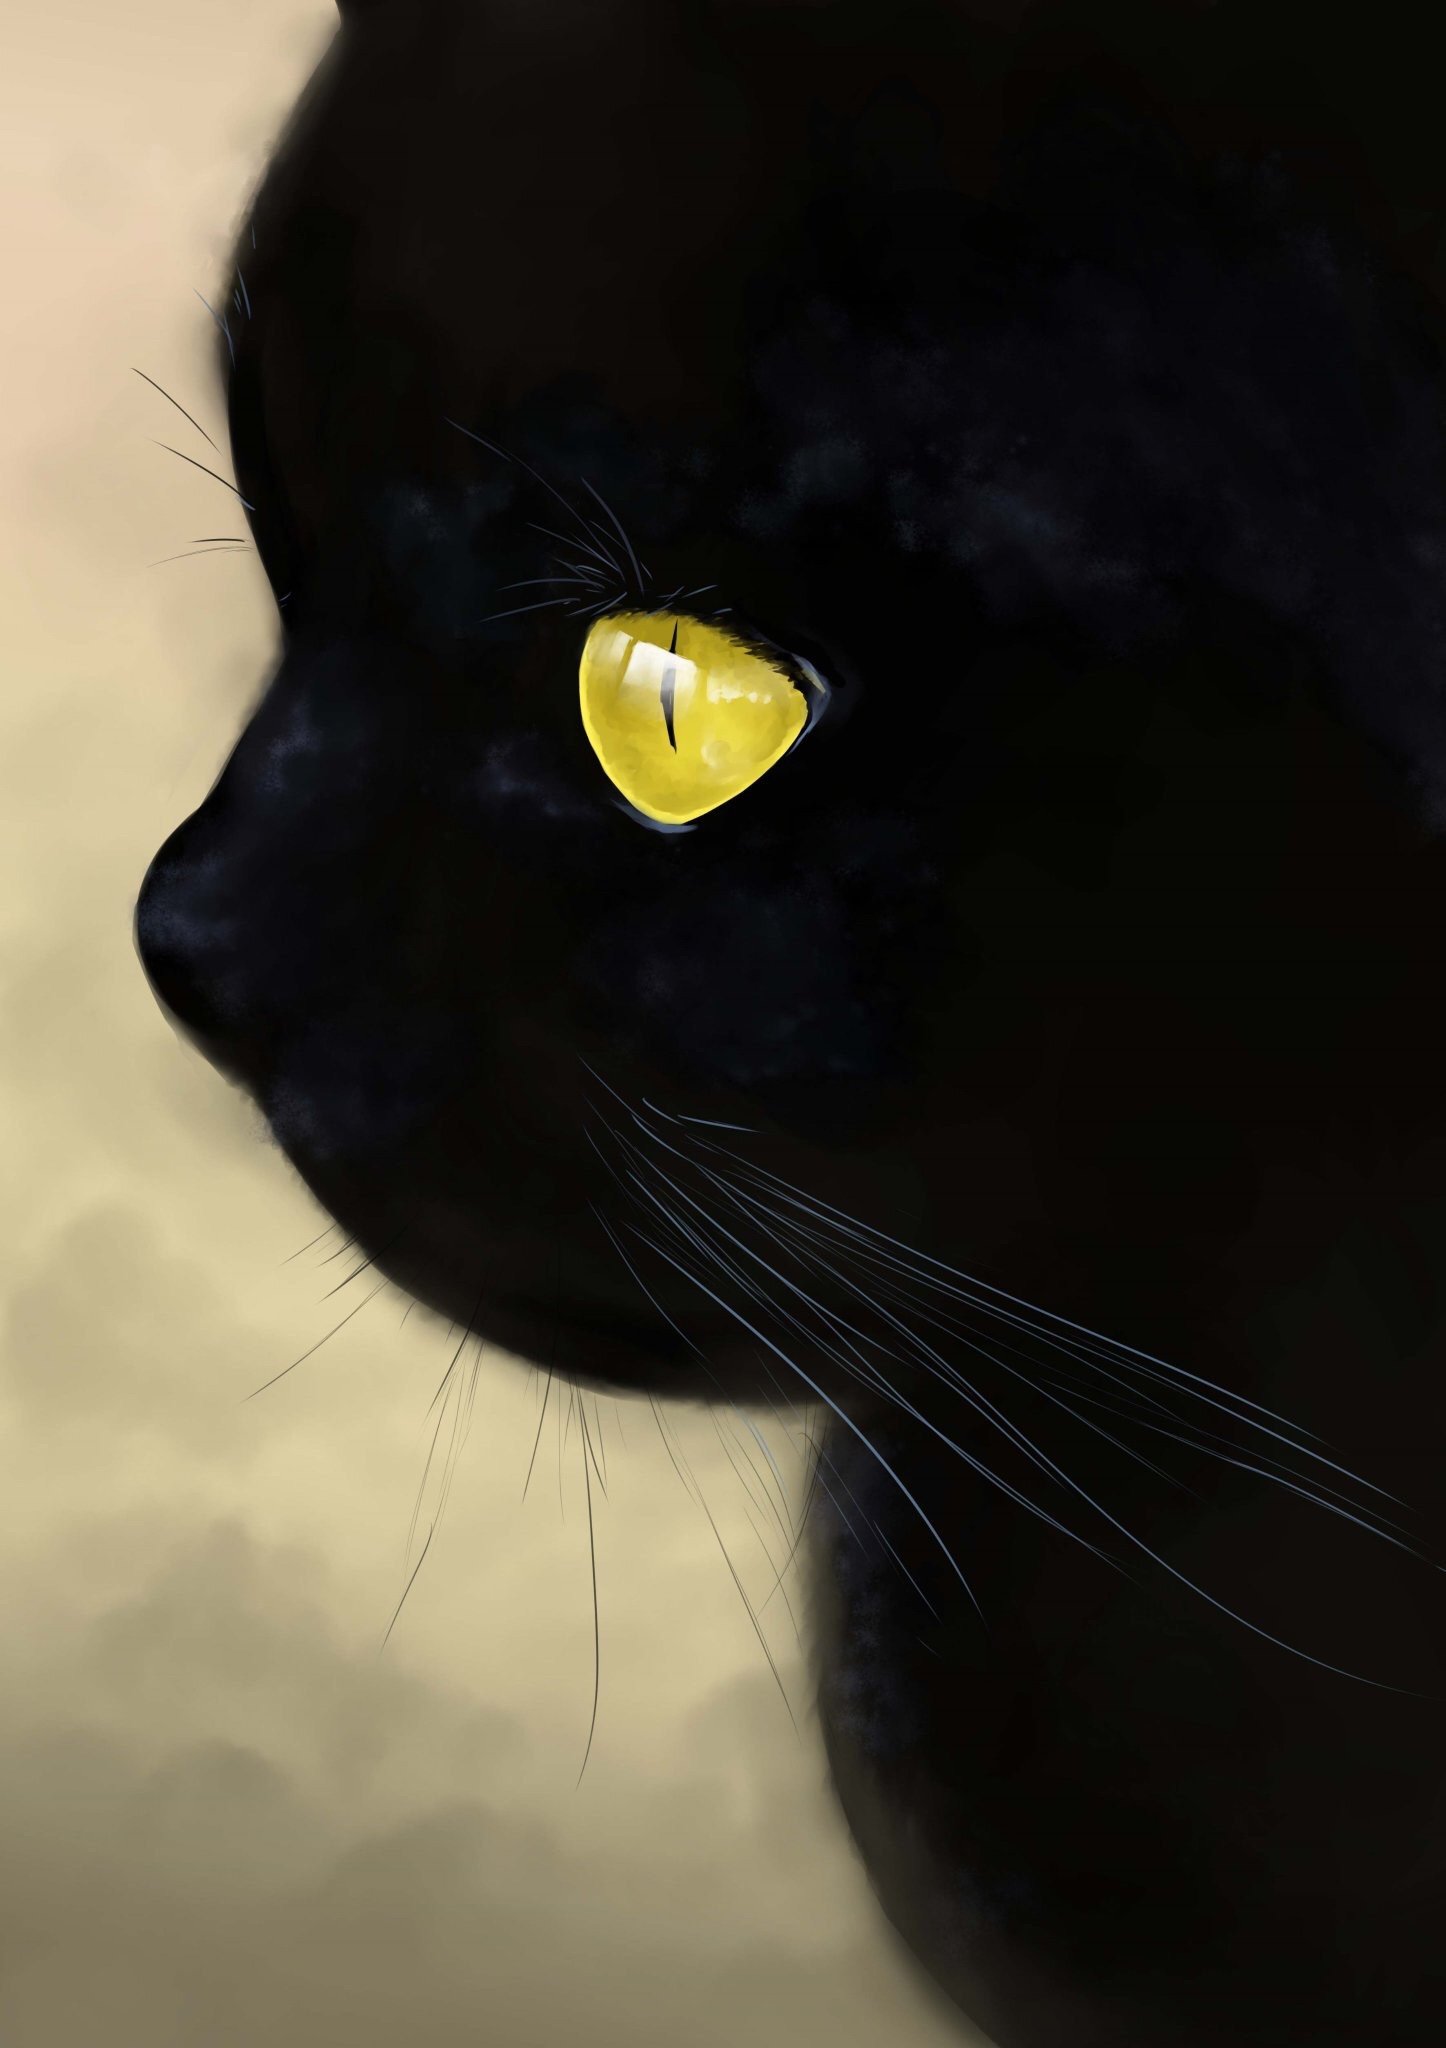 Порода черной кошки с желтыми глазами. Черный кот с желтыми глазами. Черная кошка с желтыми глазами. Чёрные коты с жёлтыми глазами. Красивый черный кот.